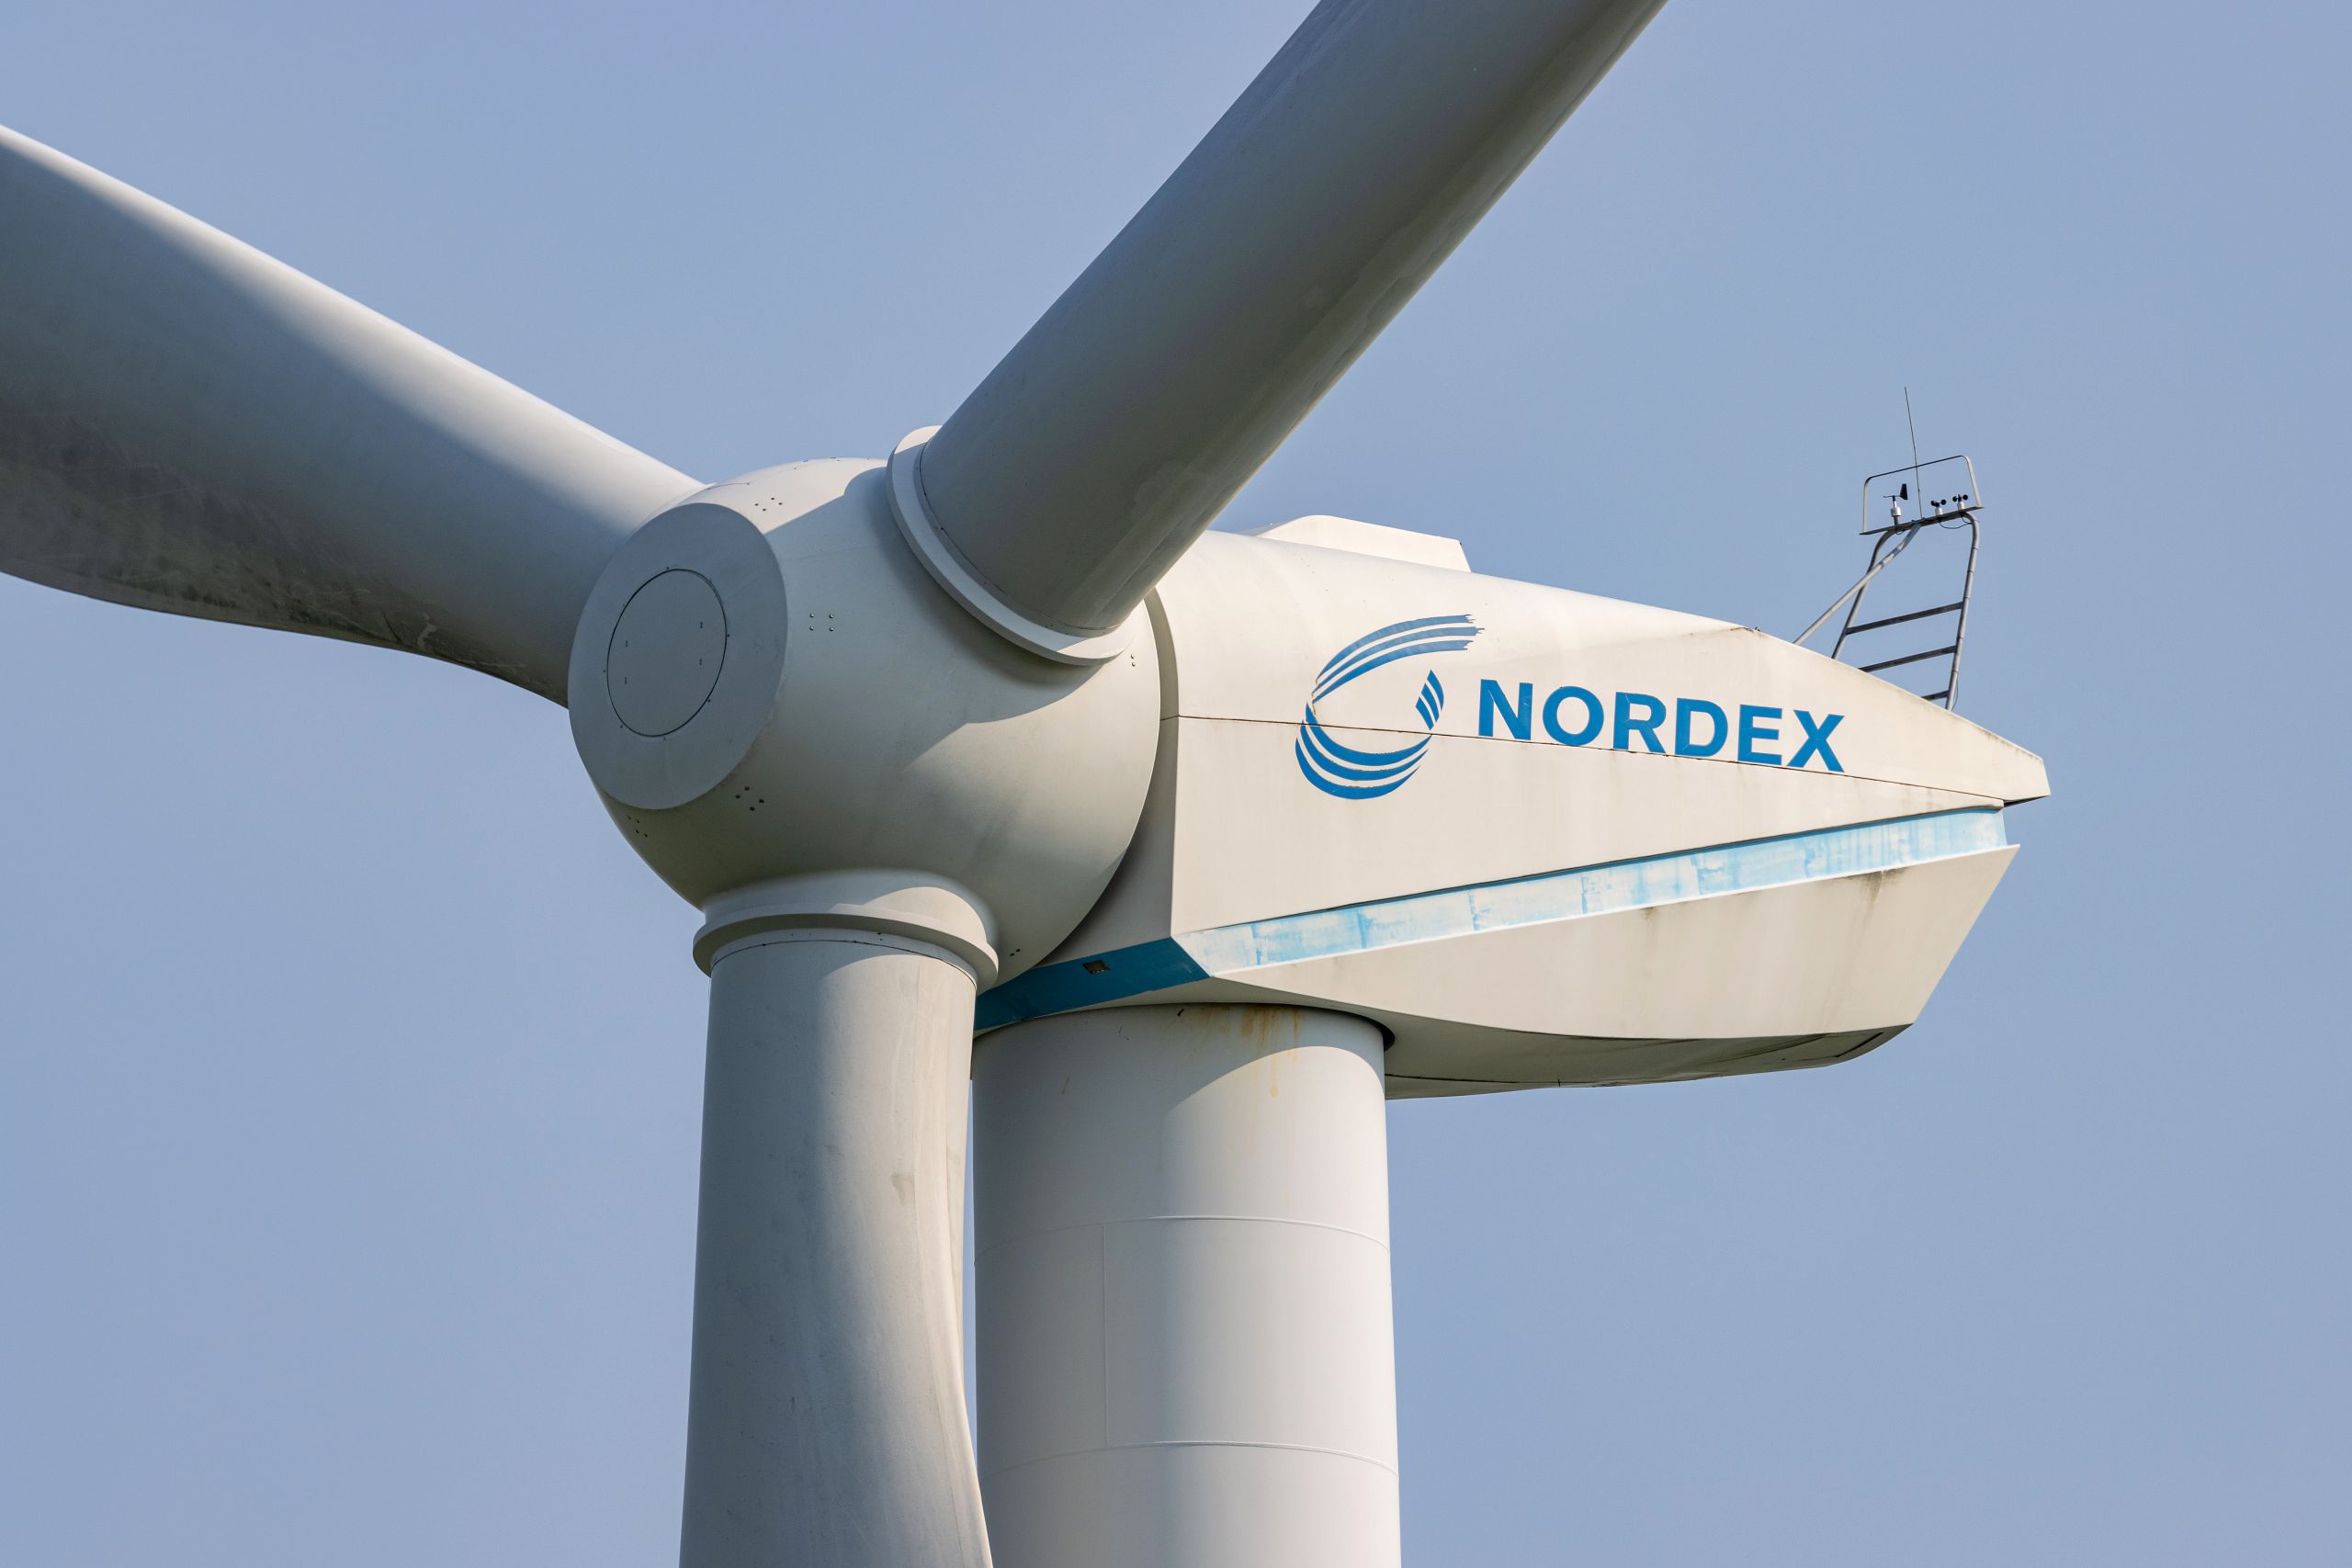 Read more about the article Nordex: Bankanalysten empfehlen Aktie mit Kursziel von 15,81 EUR